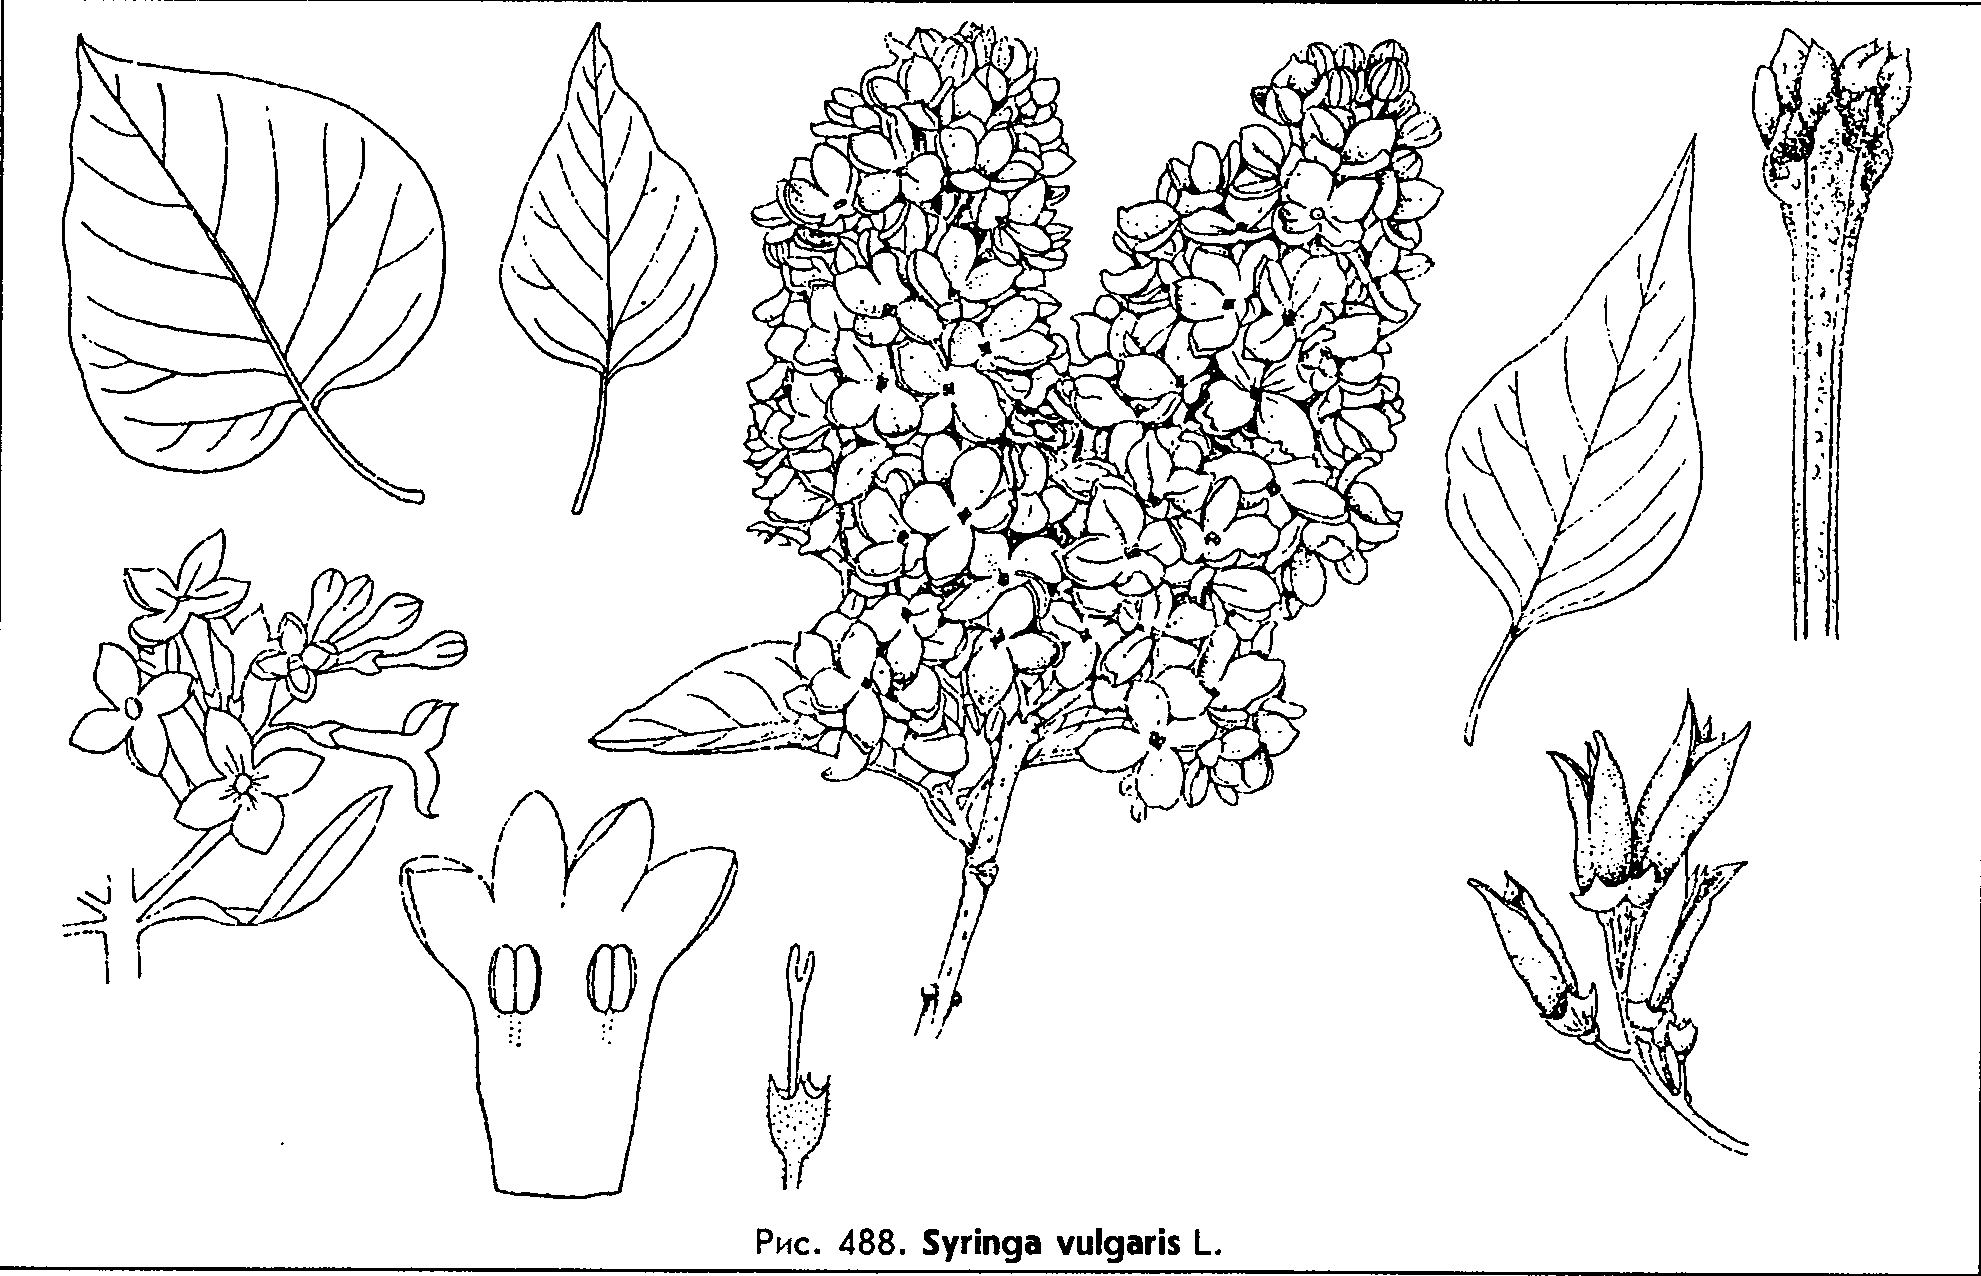 Syringa vulgaris L. — Сирень обыкновенная (Ш) Syring11